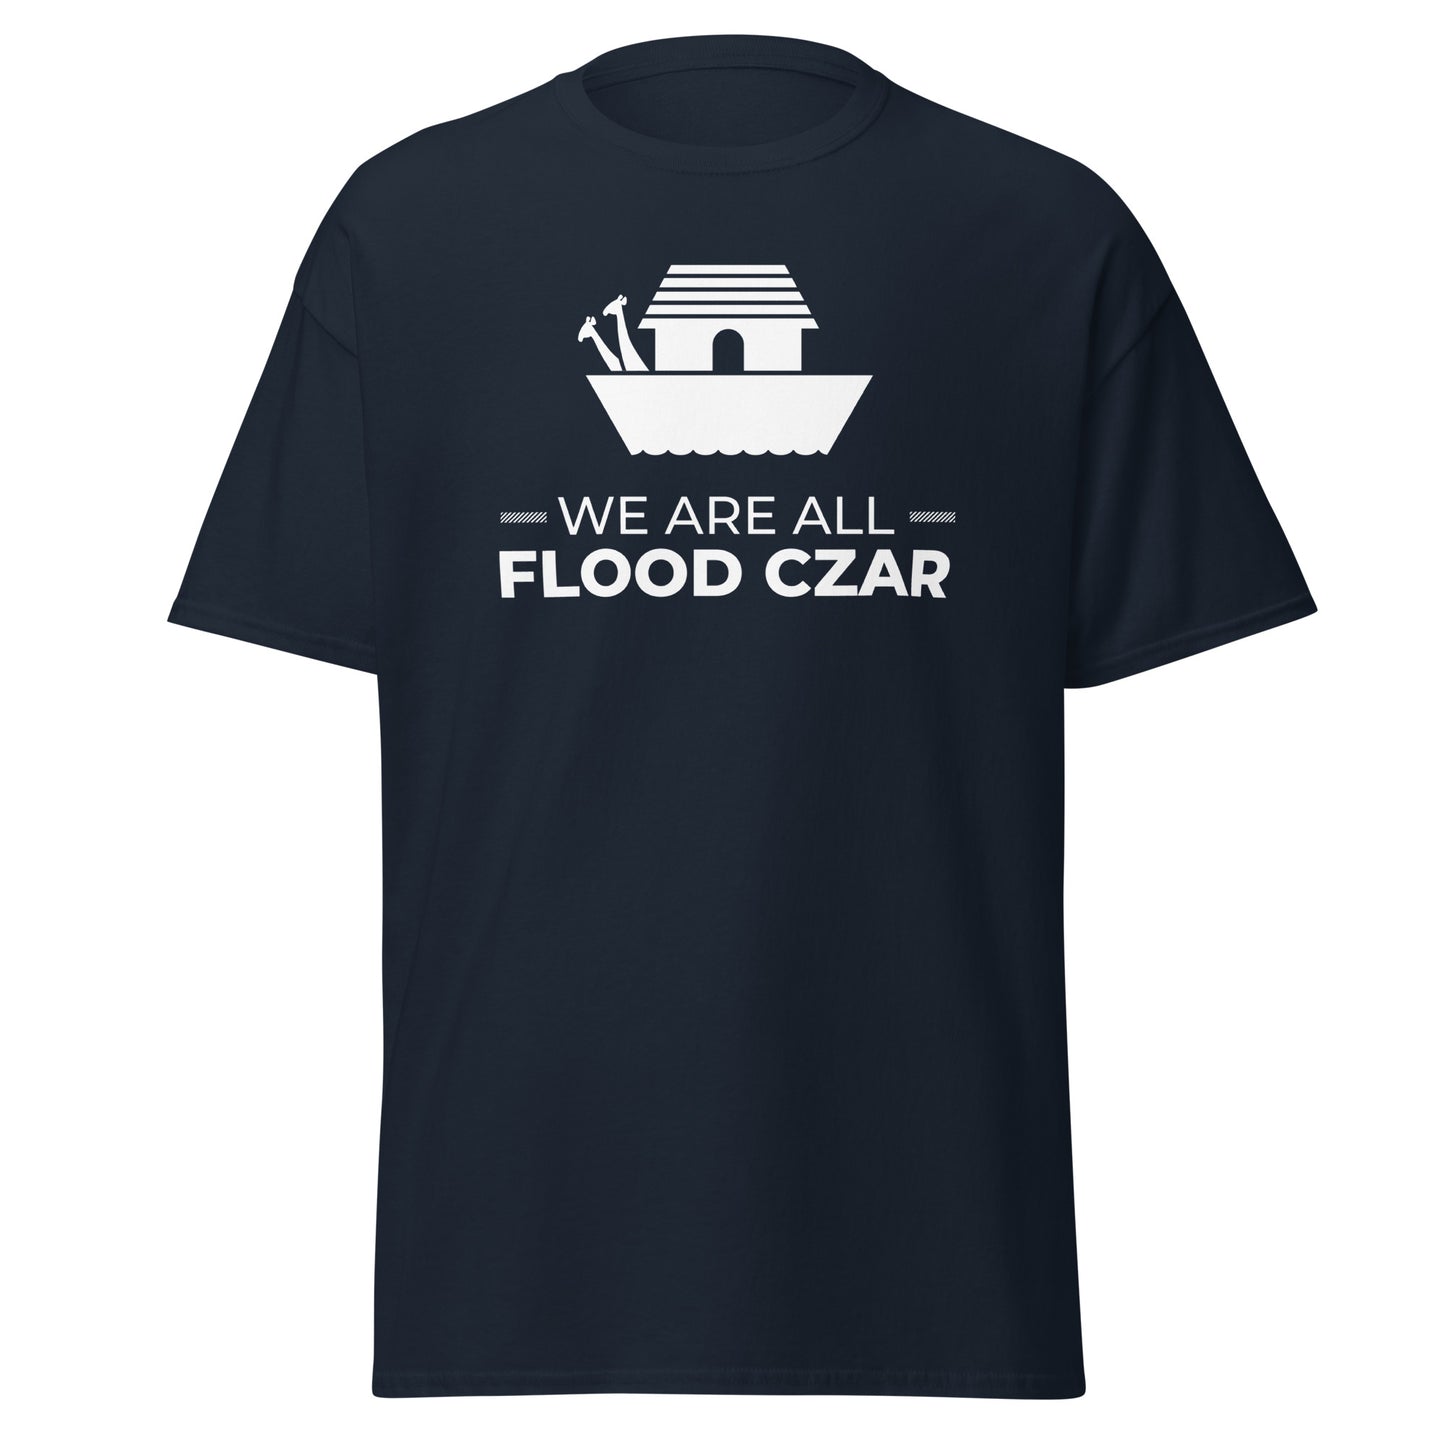 We Are All Flood Czar t-shirt